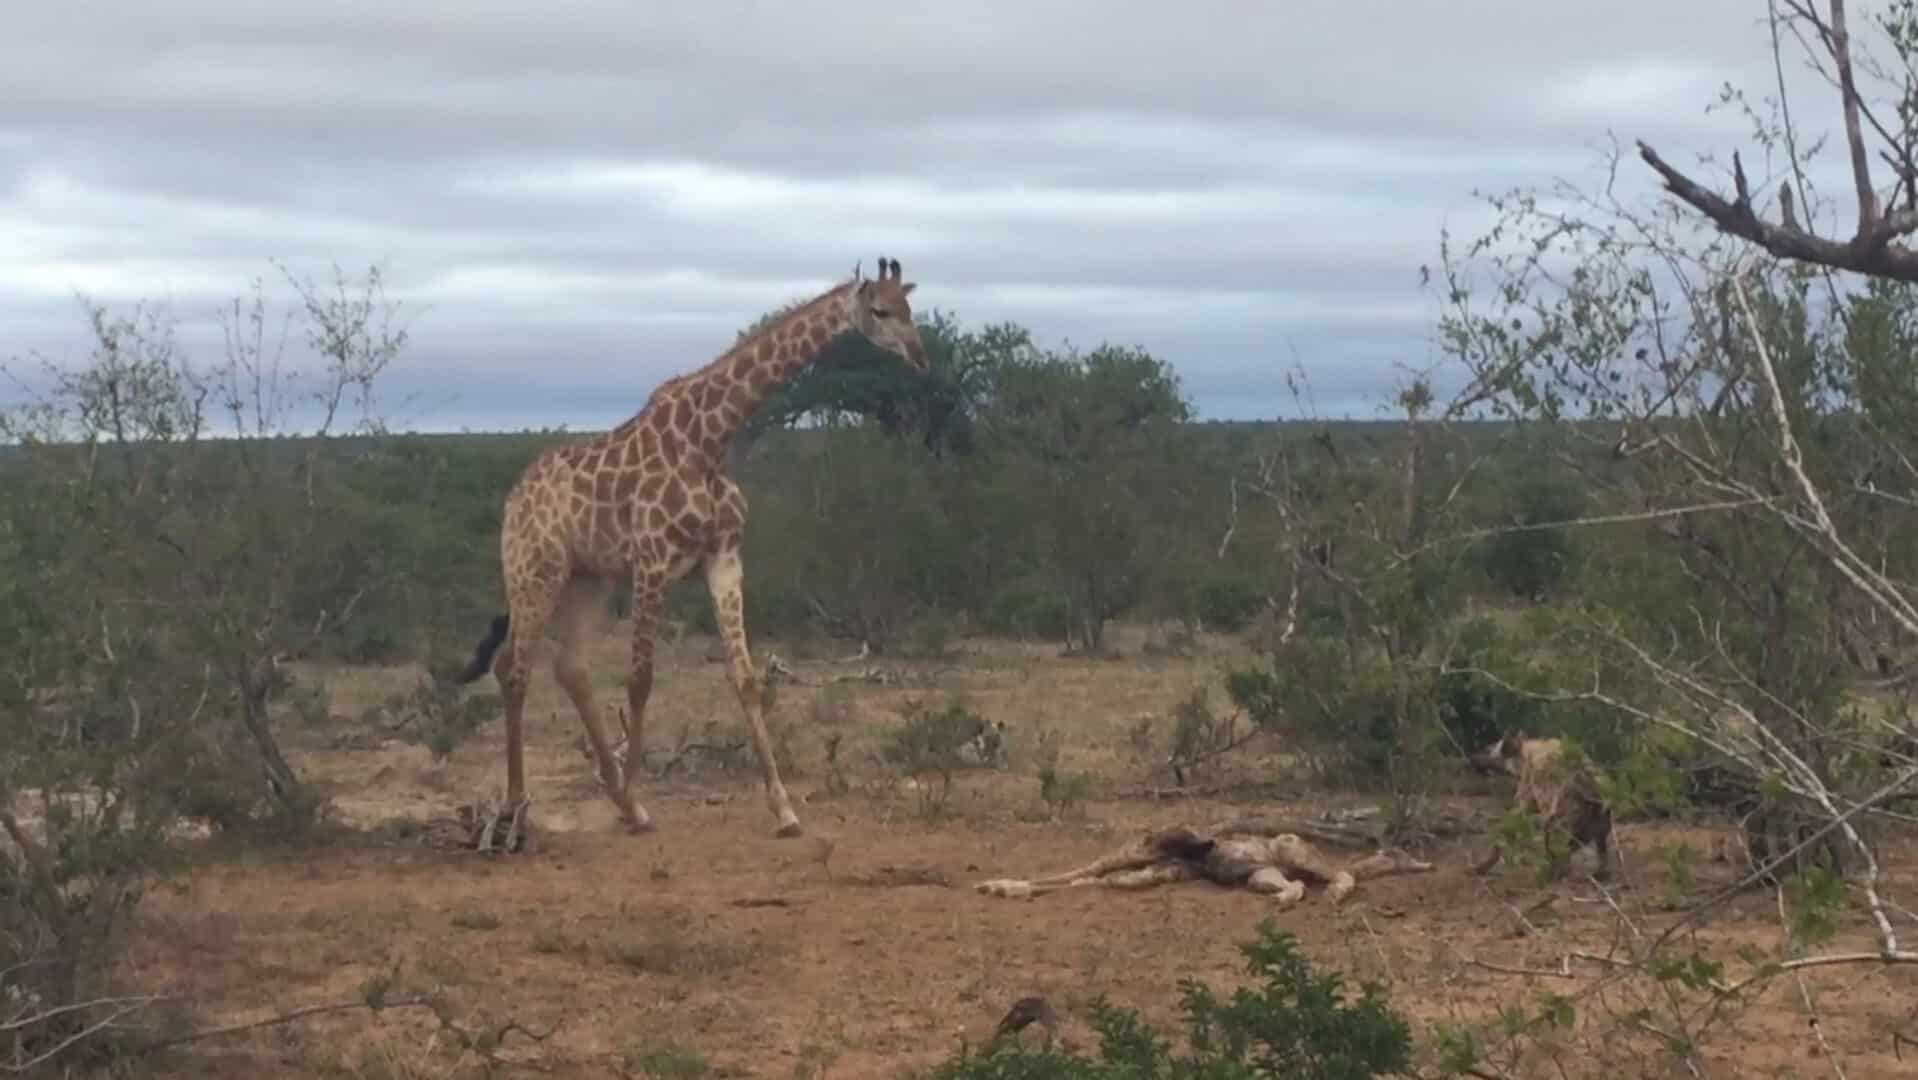 Giraffe with her dead calf